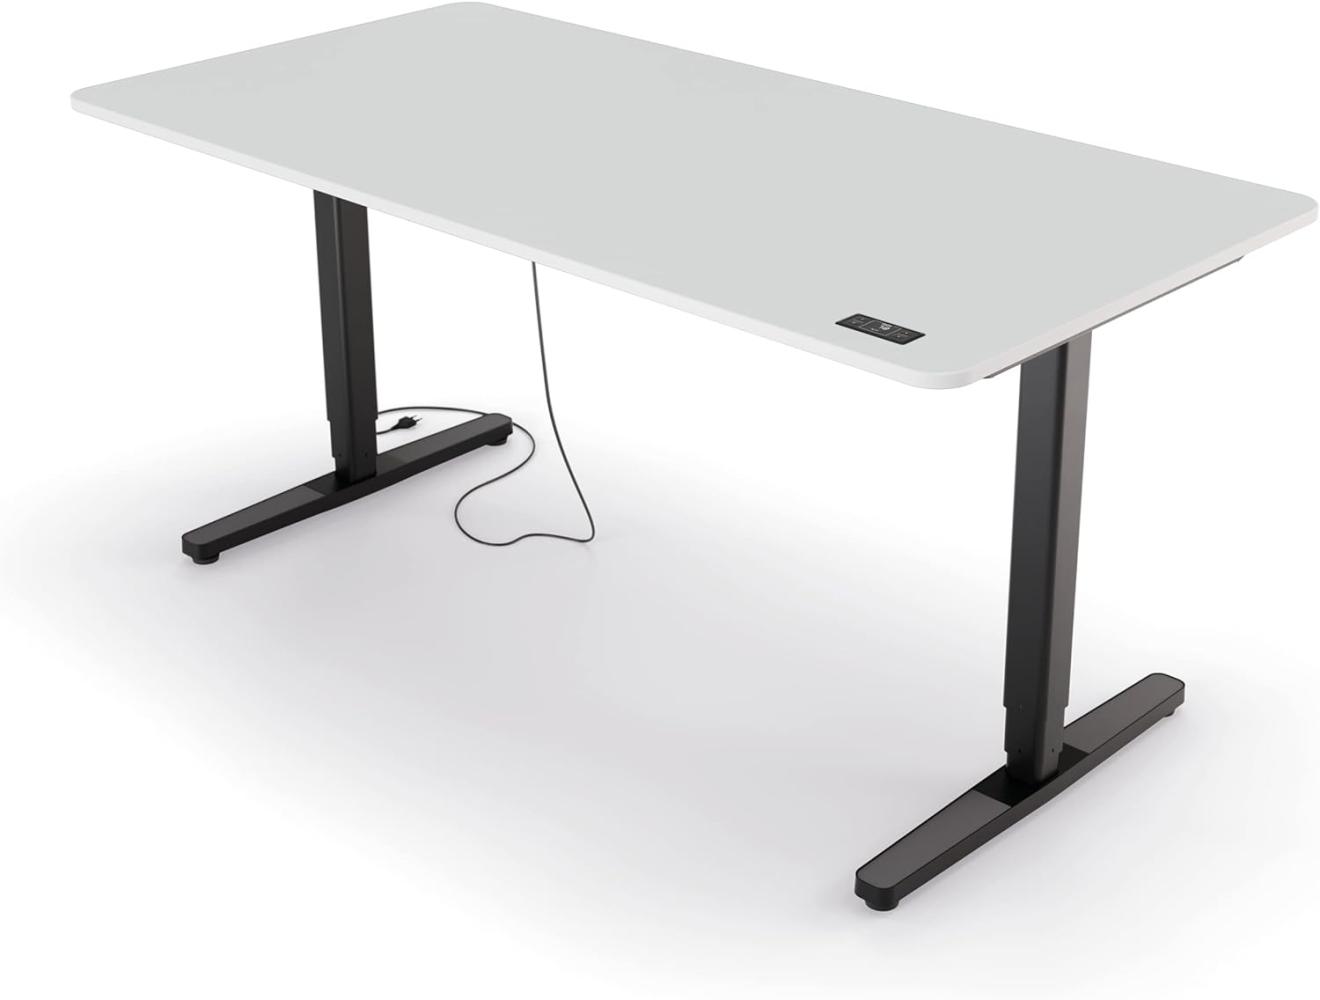 Yaasa Desk Pro II Elektrisch Höhenverstellbarer Schreibtisch, 160 x 80 cm, Offwhite-Schwarz, mit Speicherfunktion und Kollisionssensor Bild 1